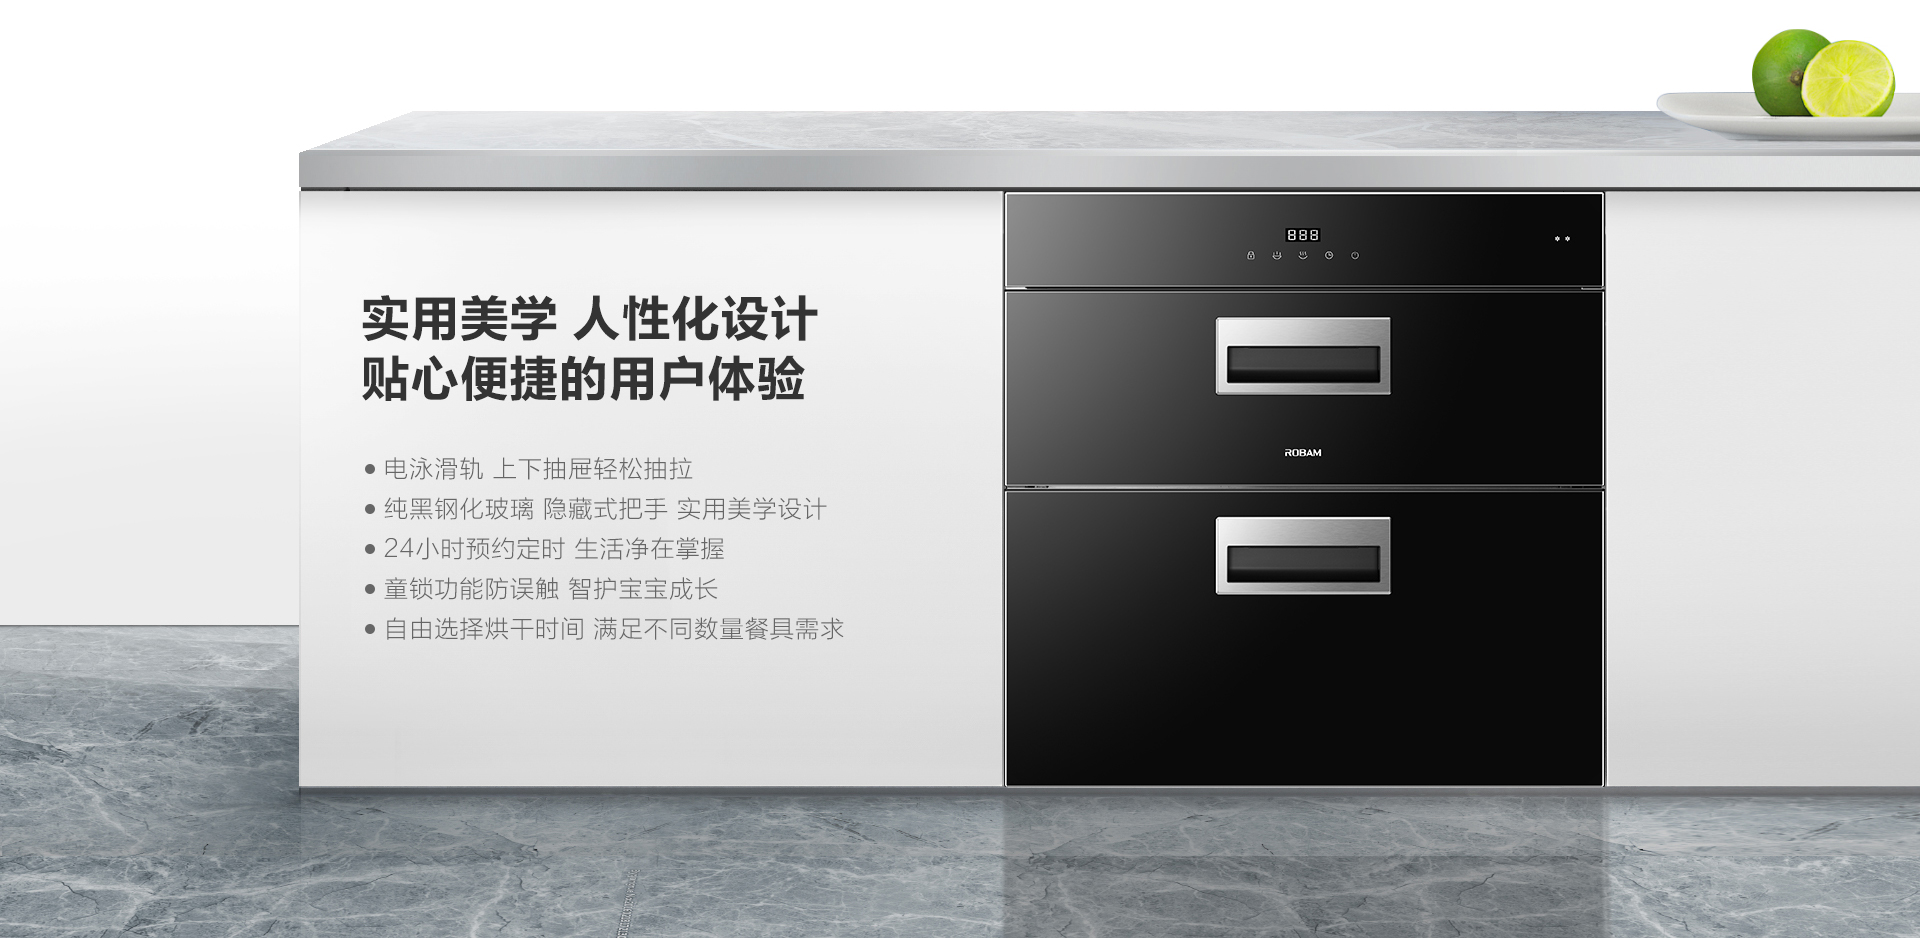 XB821消毒柜-上新-PC端-201116_05.jpg